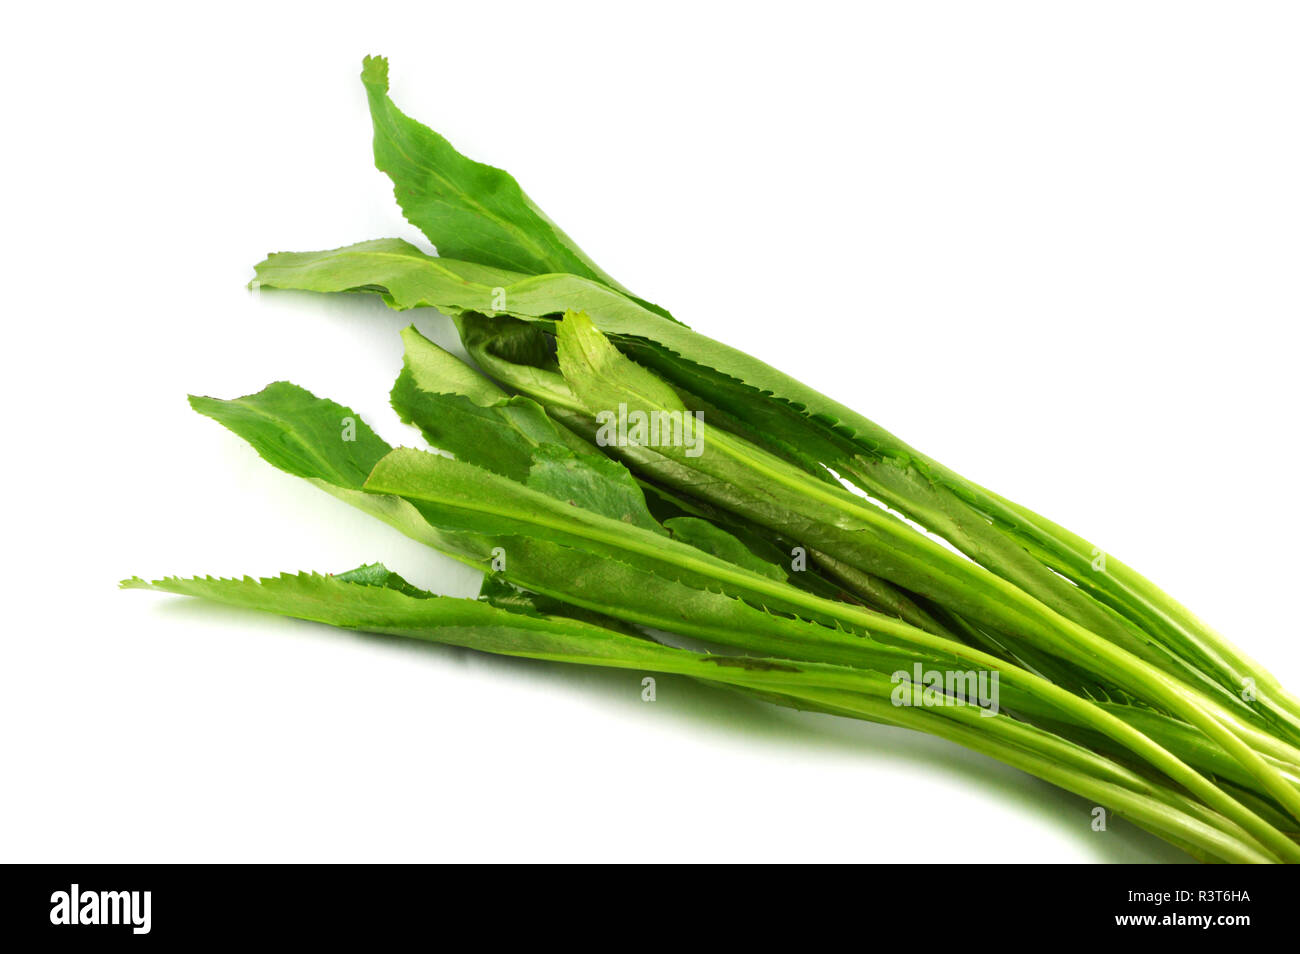 Frische culantro/Sägezahn Koriander eryngium foetidum auf weißem Hintergrund - grünes Blatt culantro Gemüse Stockfoto